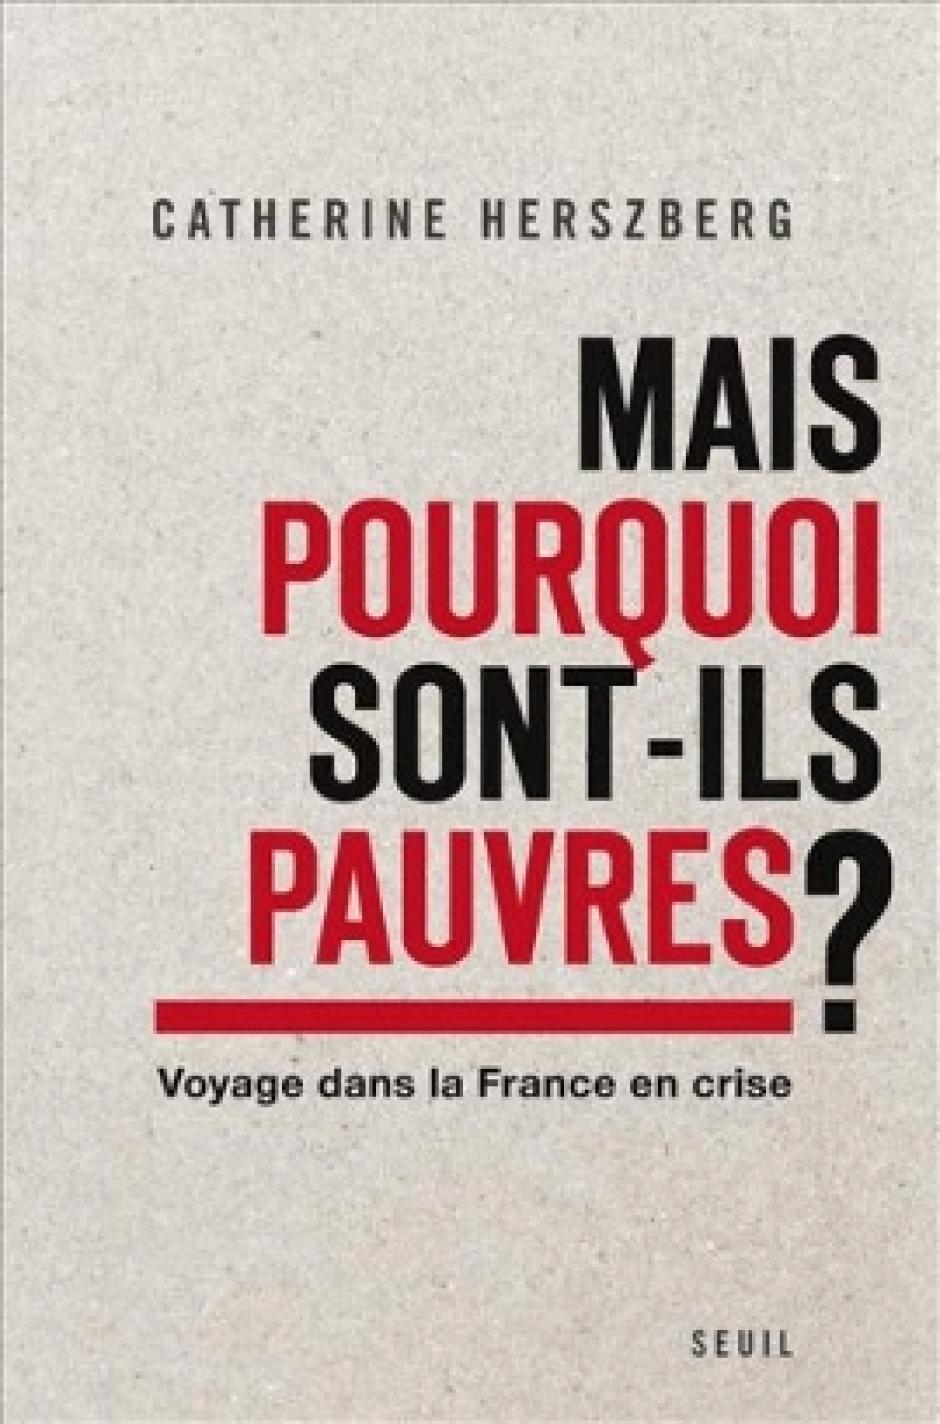 14 novembre, Amiens - Pourparlers en Picardie invite Catherine Herszberg « Mais pourquoi sont-ils pauvres ? Voyage dans la France en crise »